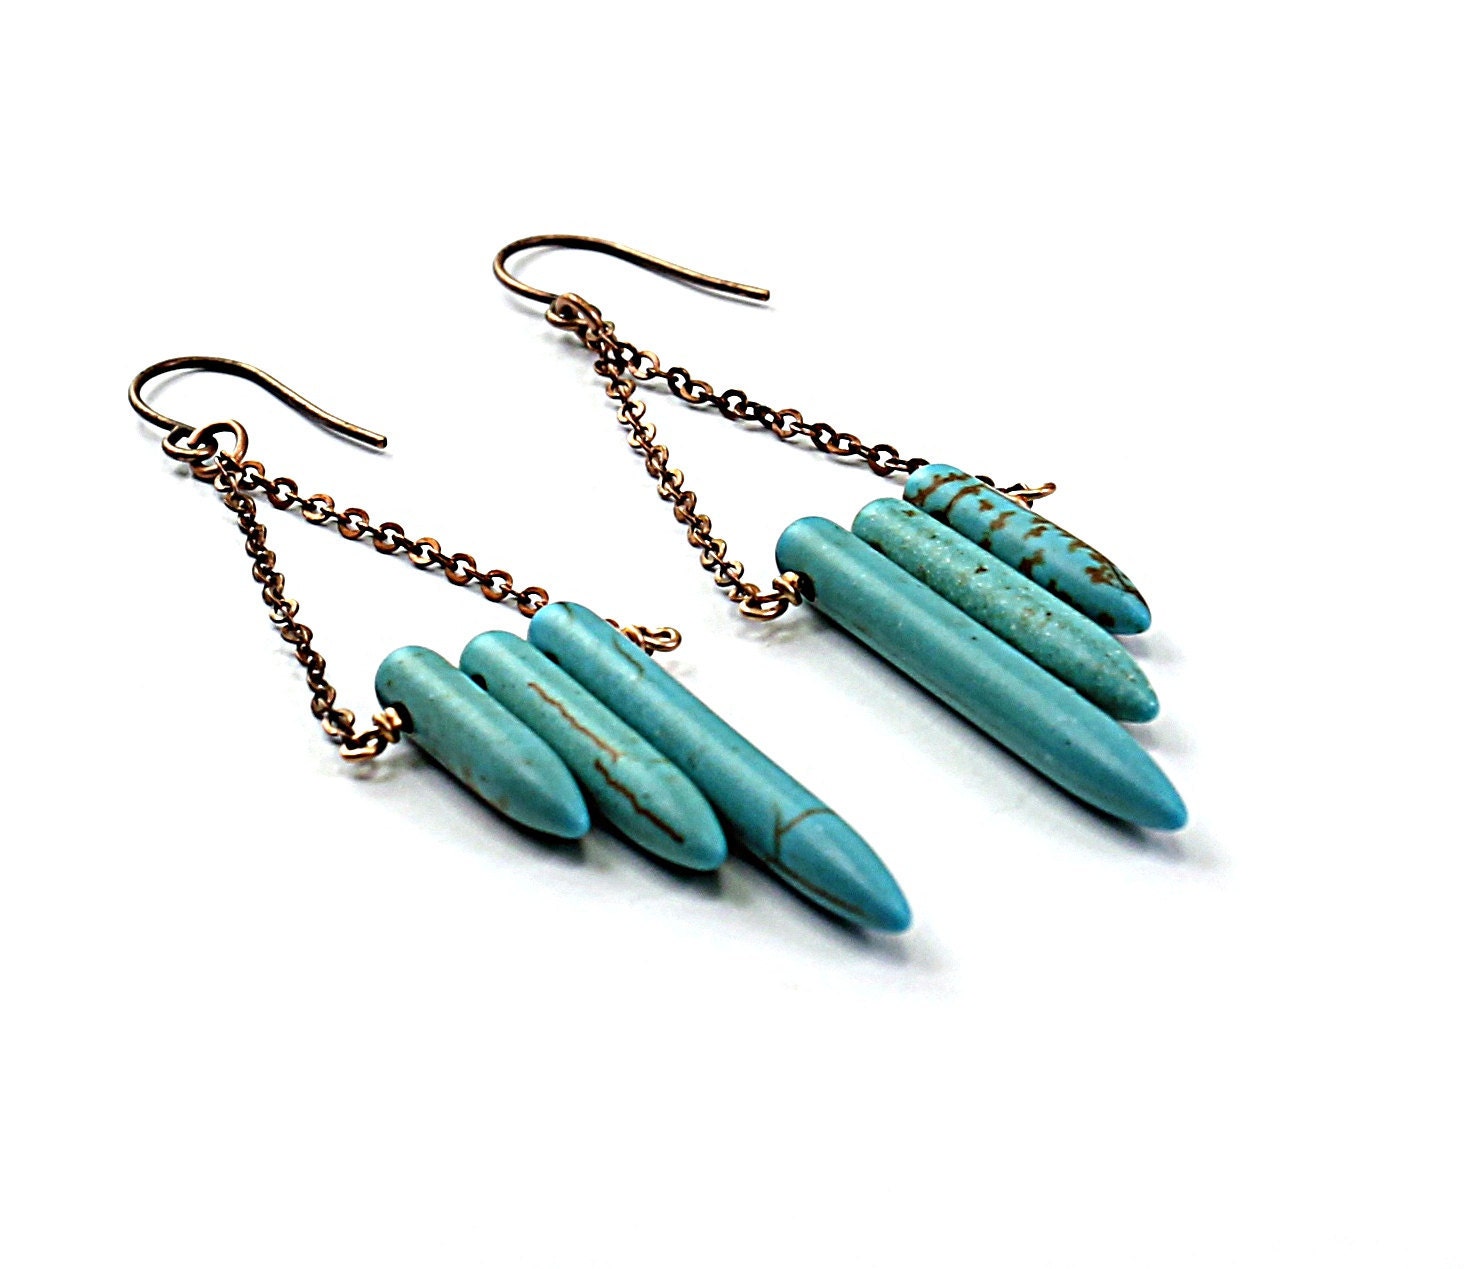 Turquoise earrings: blue earrings, inspired by native american earrings brass chain long earrings ethnic jewelry - NatureLook